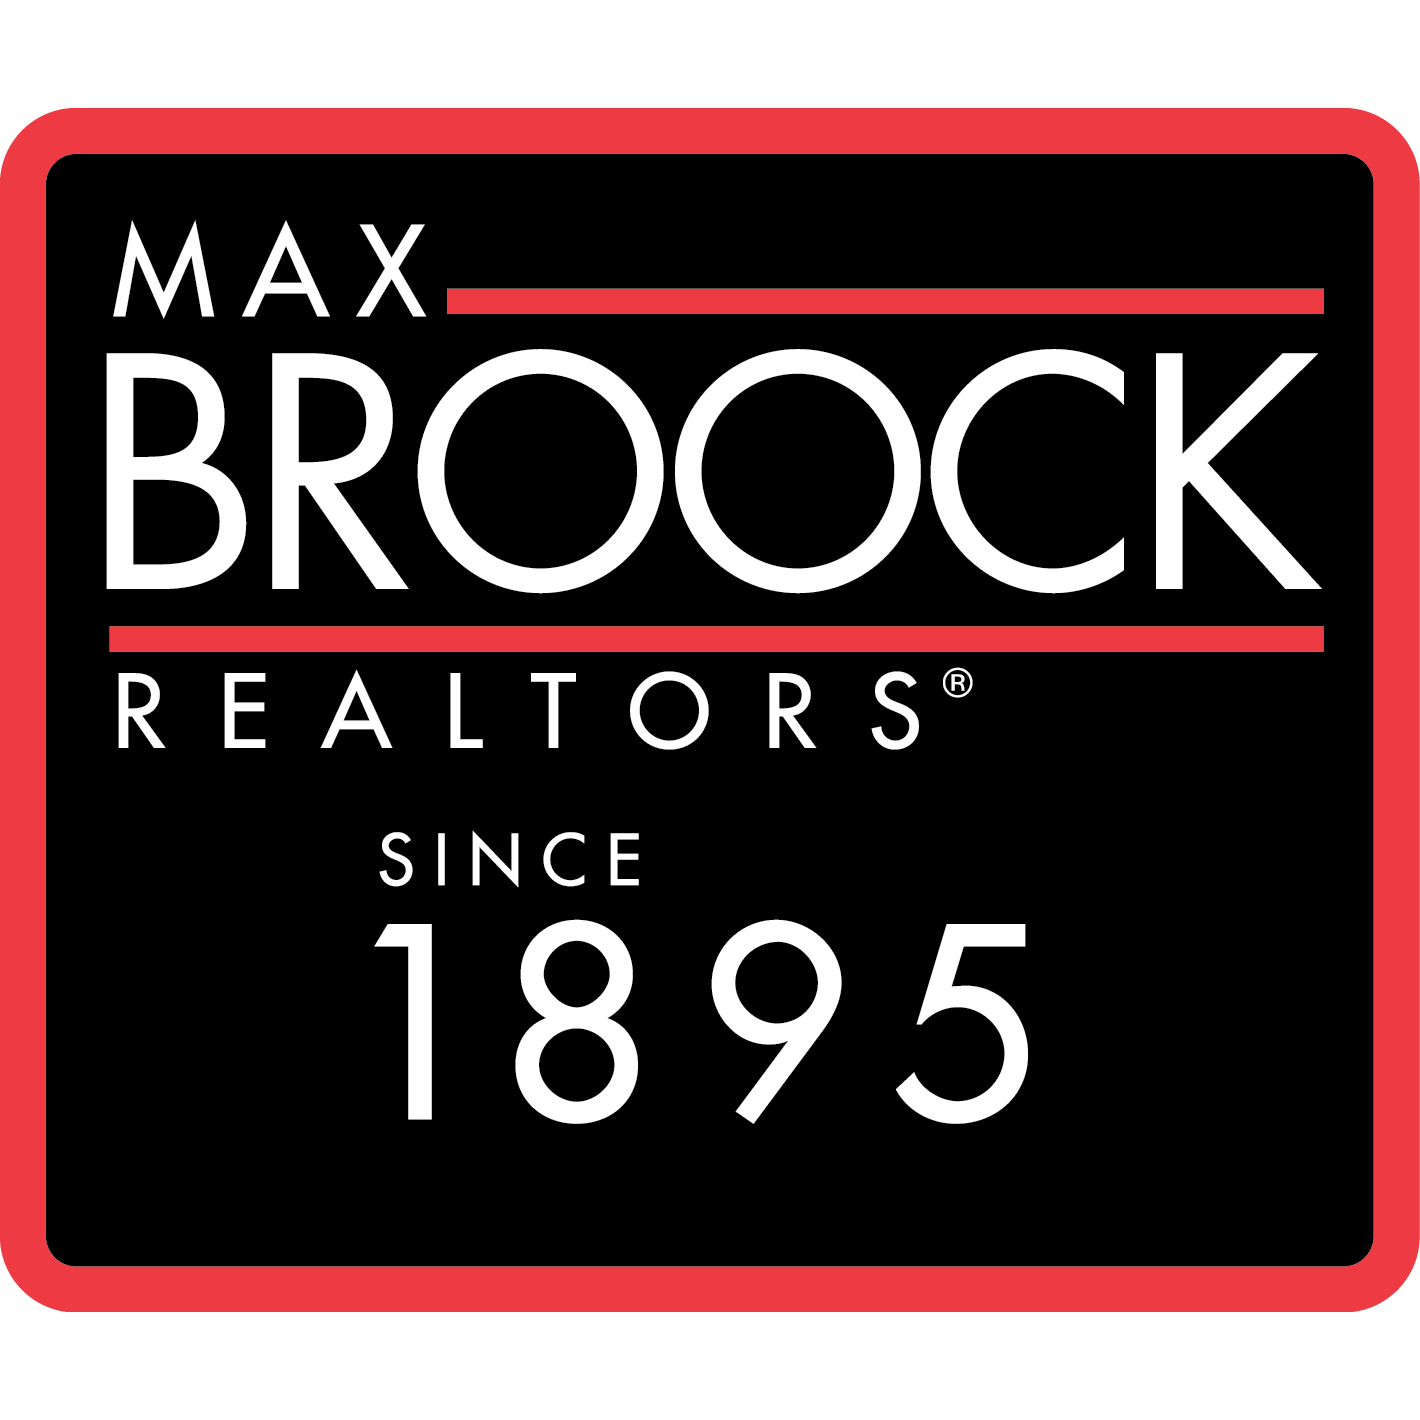 Max Broock REALTORS Detroit (313)324-8600